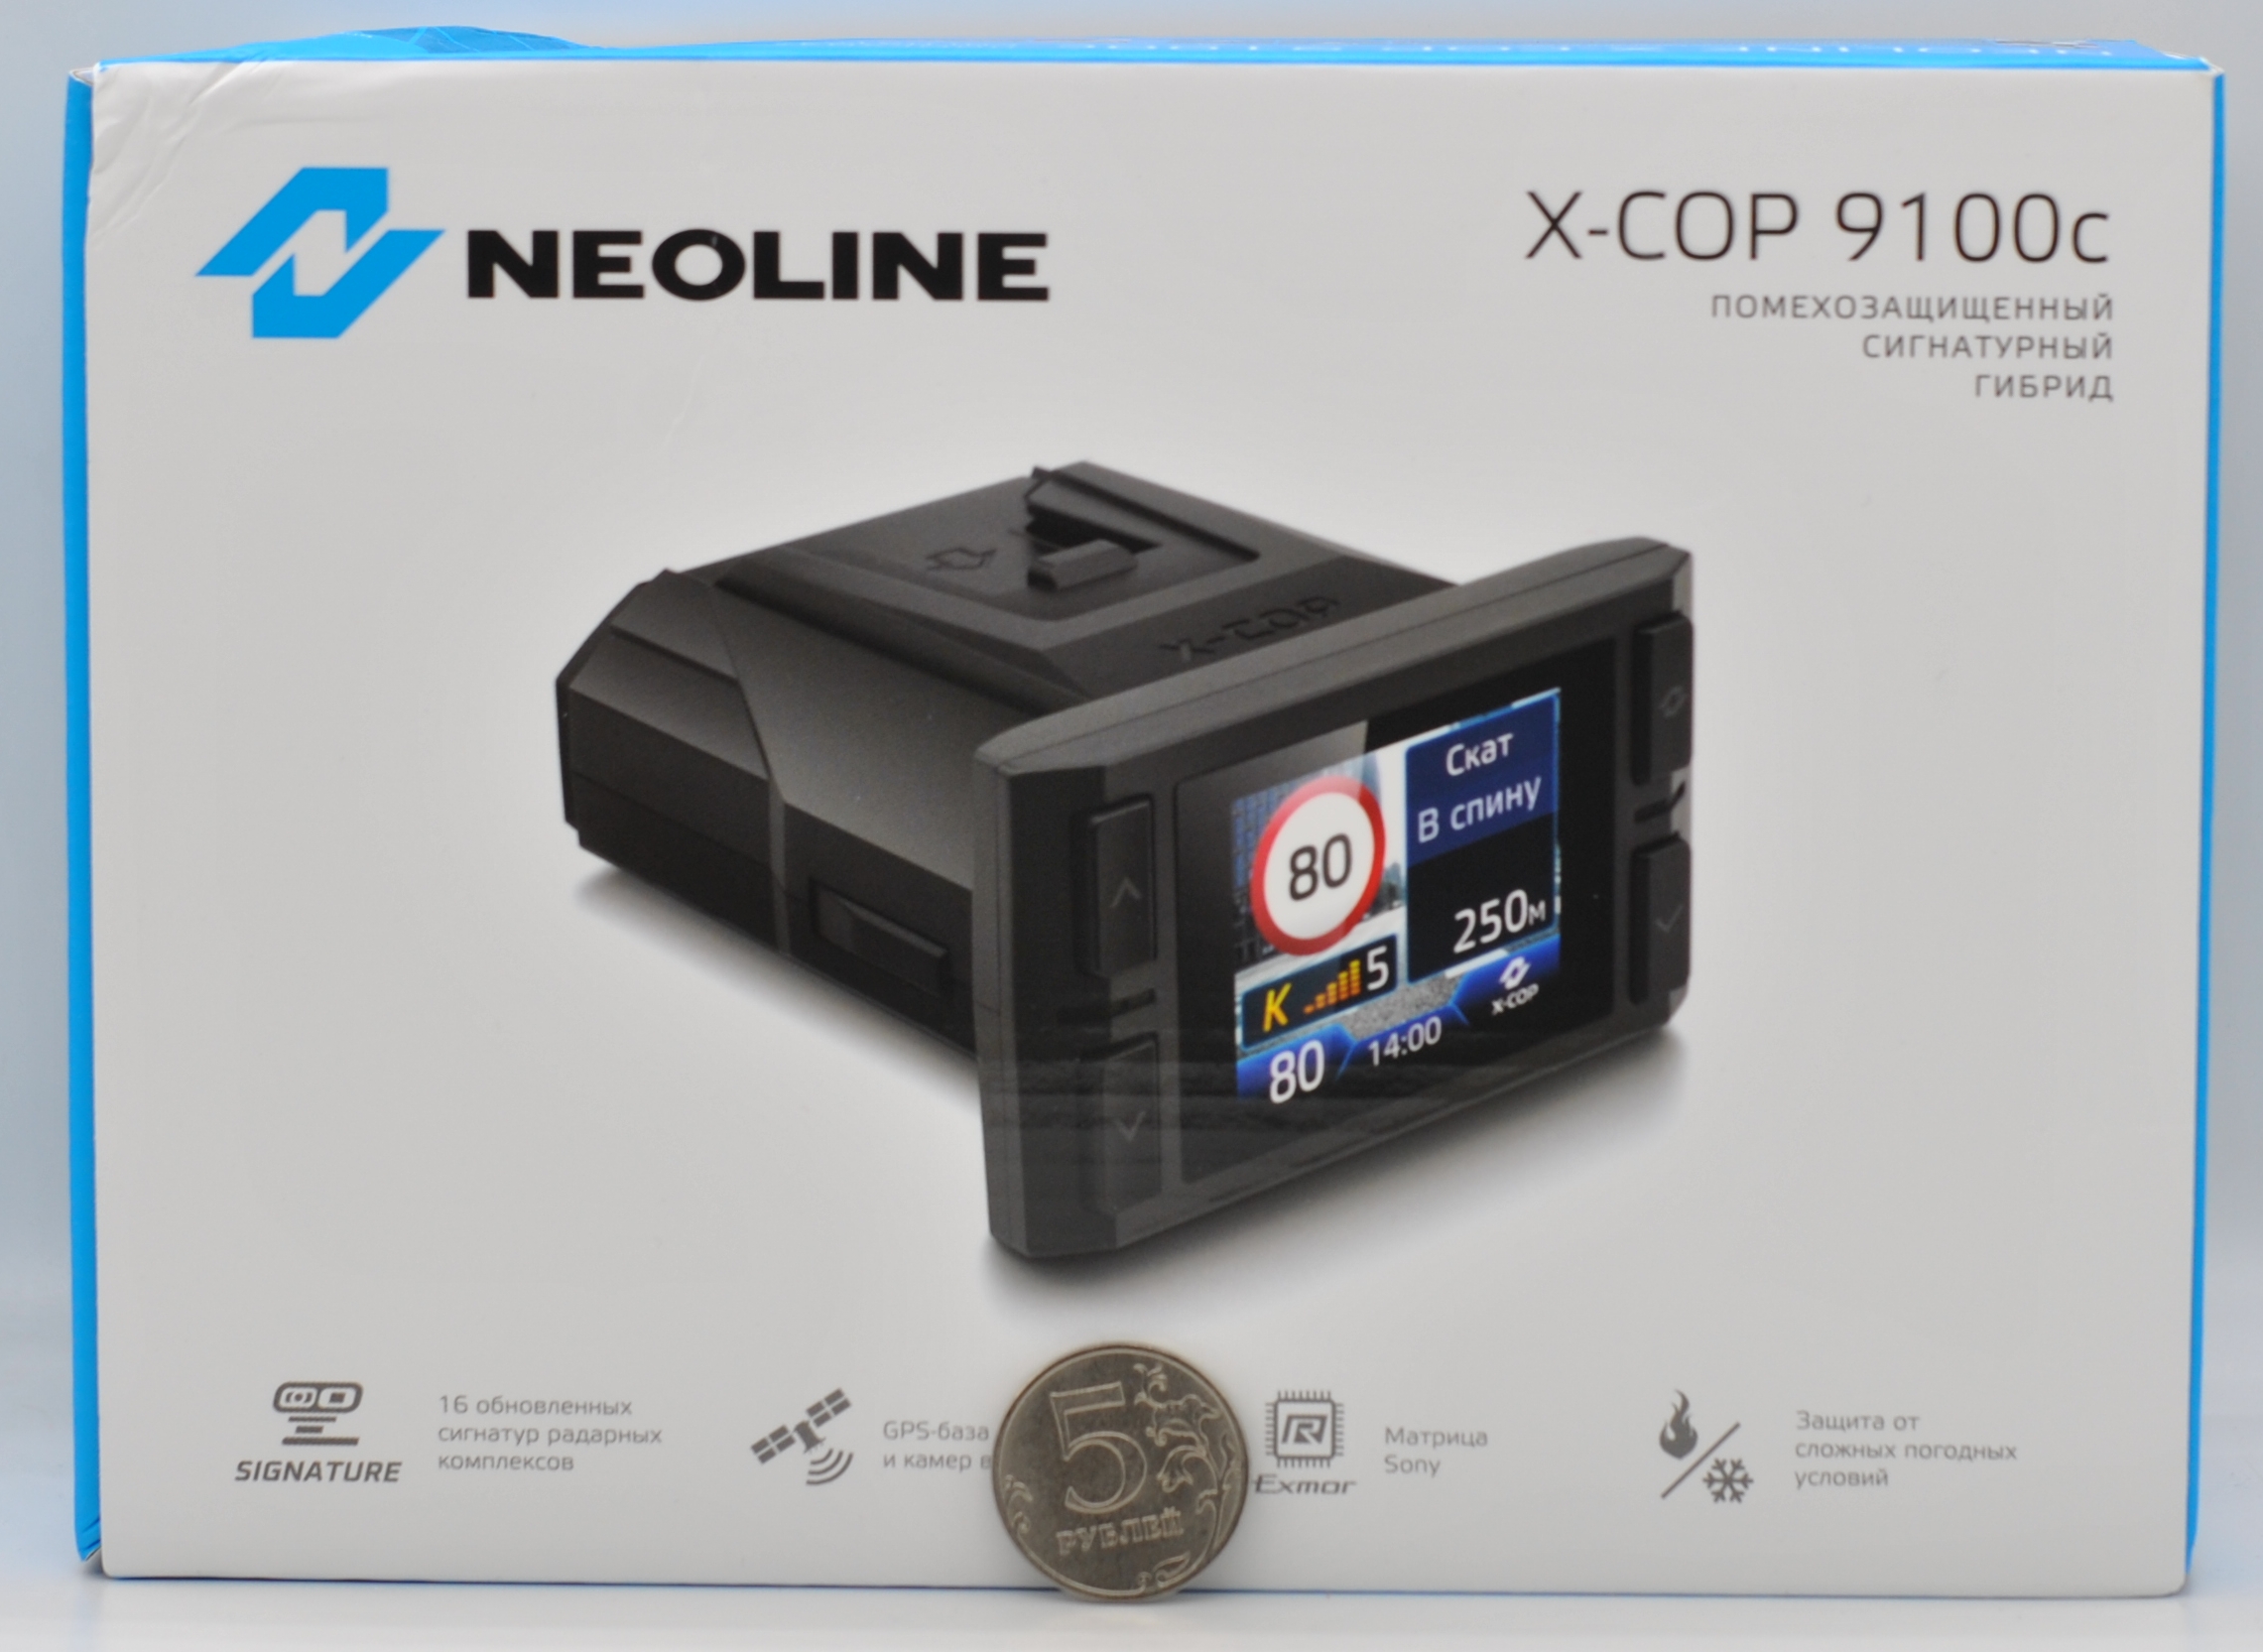 Neoline x cop гибрид. Neoline x-cop 9100x. X-cop 6000c. Где на коробке находится серийный номер устройства гибрила Neoline xcop 9100z.